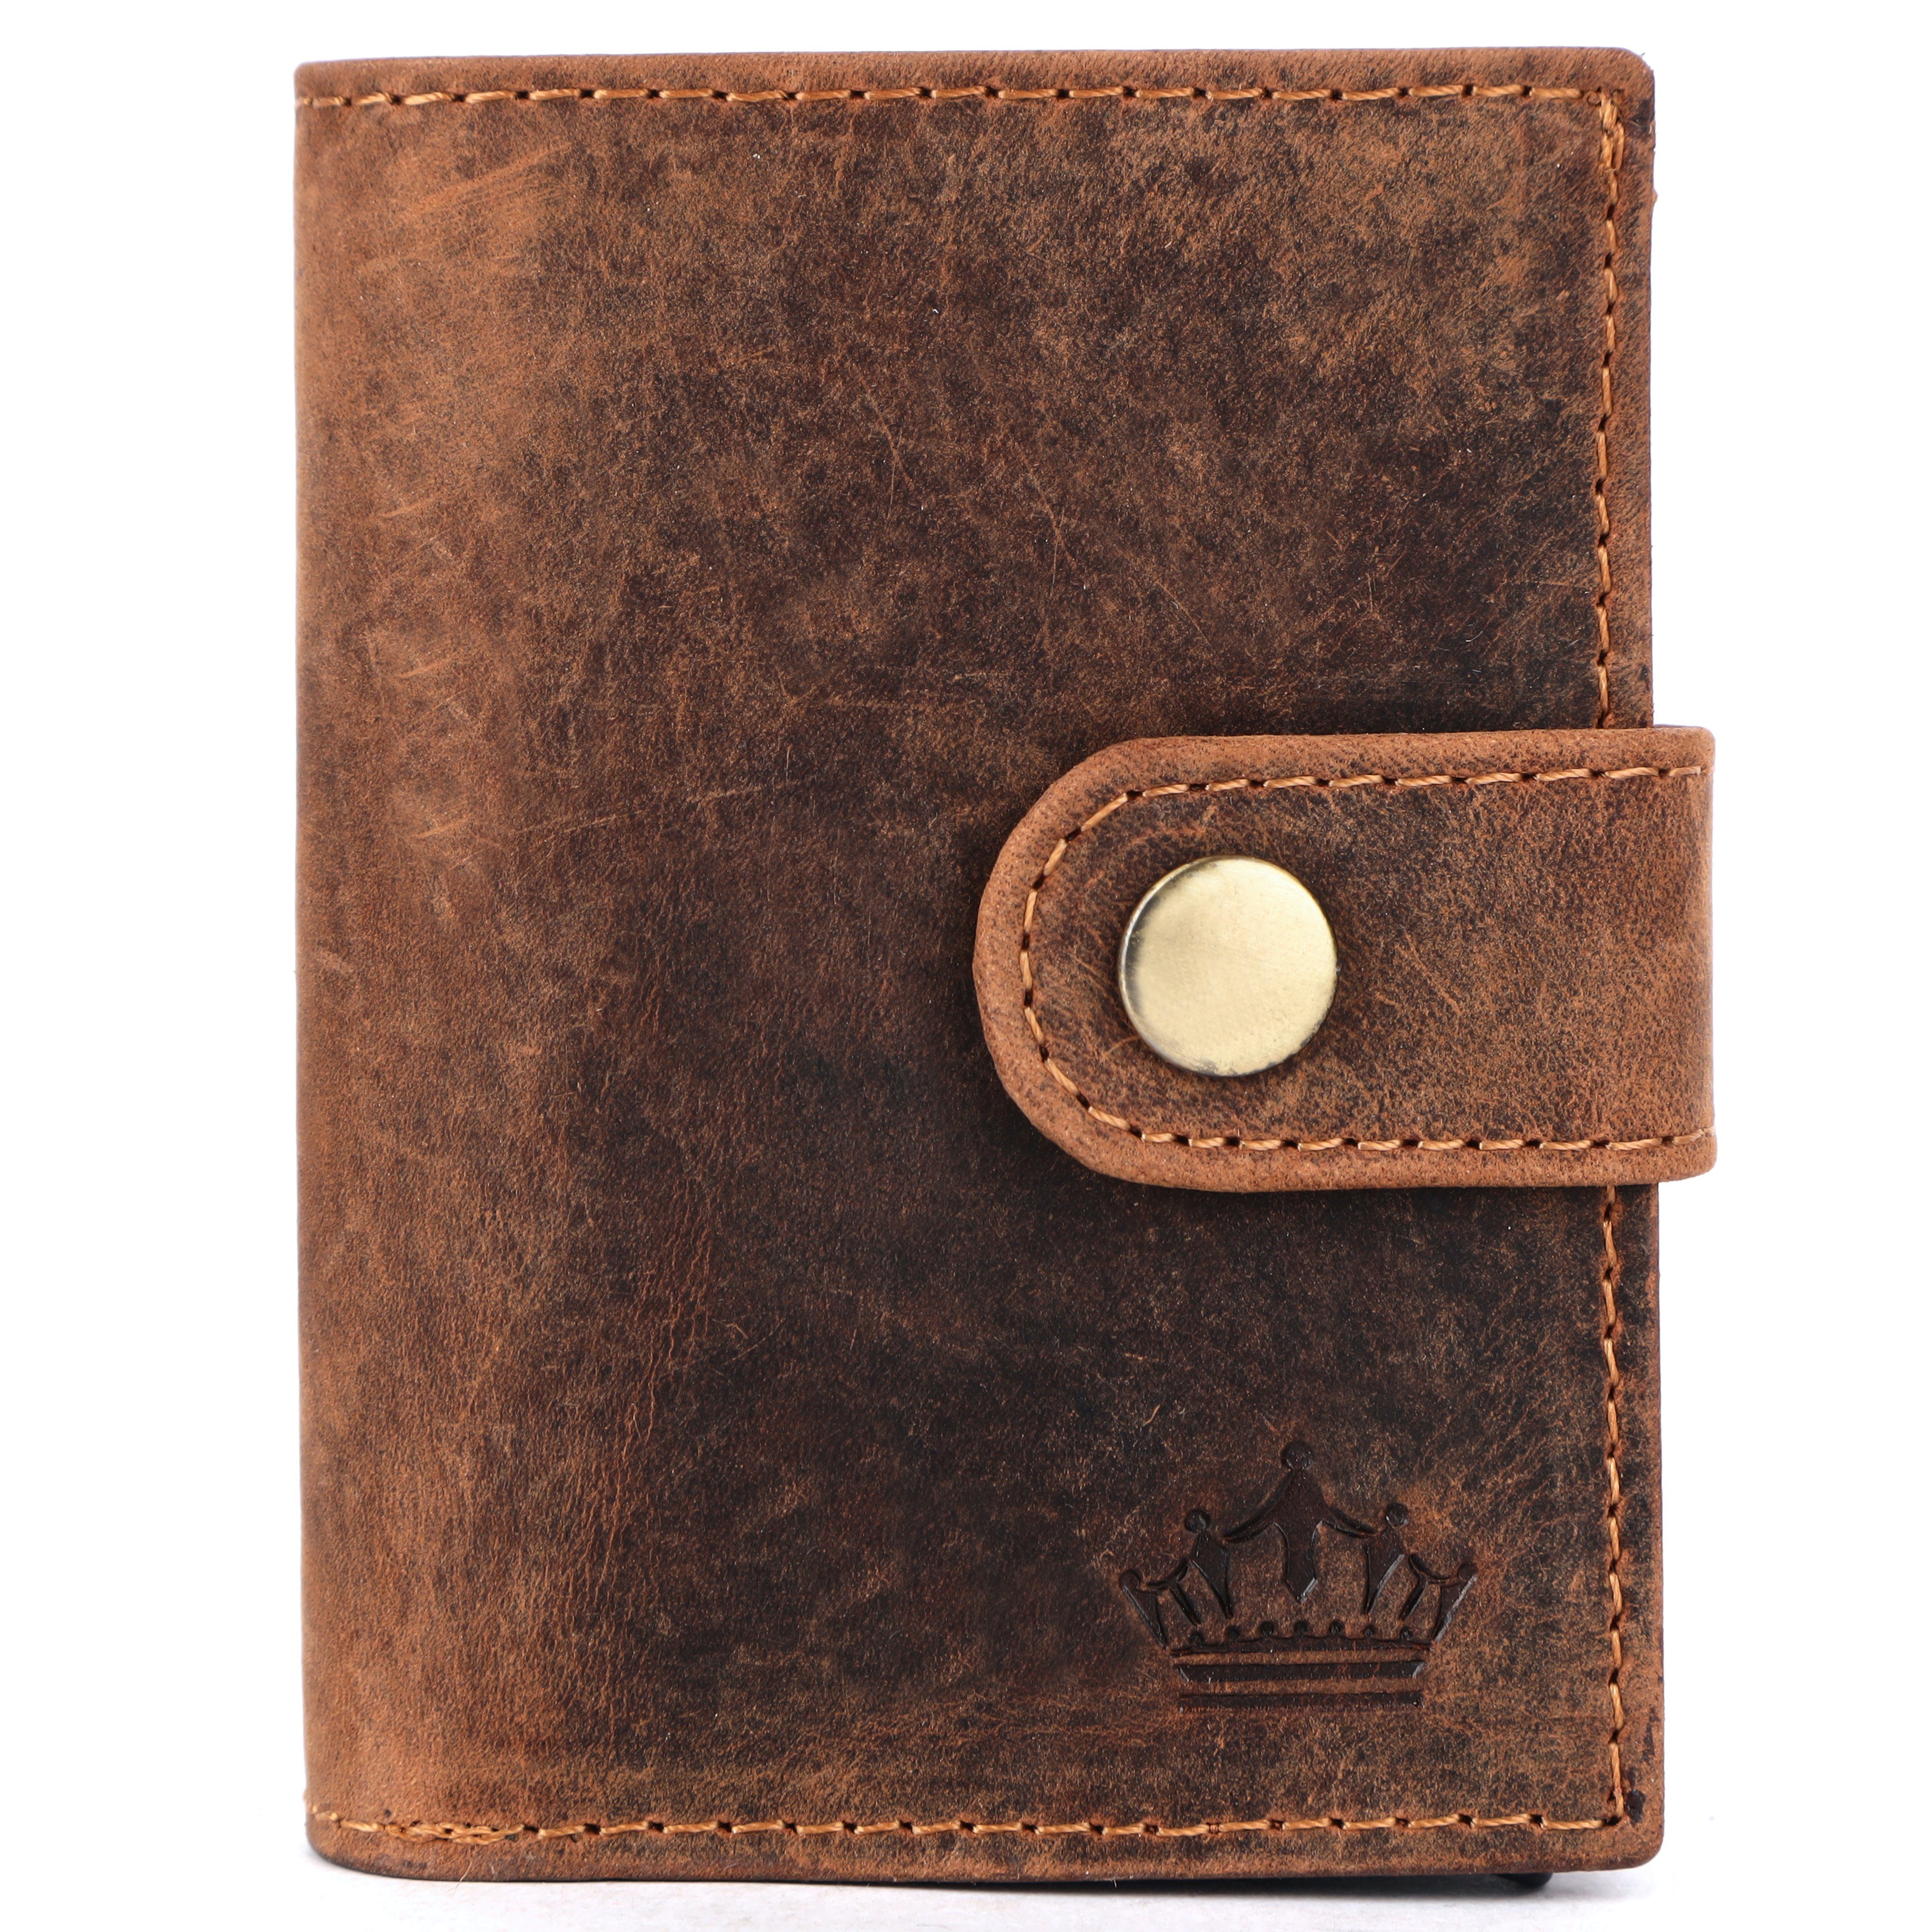 Manza Mini Geldbörse Slim Wallet Geldbörse mit Münzfach, RFID-Schutz und Geschenkbox, Kartenhalter, Münzfach mit Reißverschluss, RFID Blocker, Geschenkbox Braun TAN